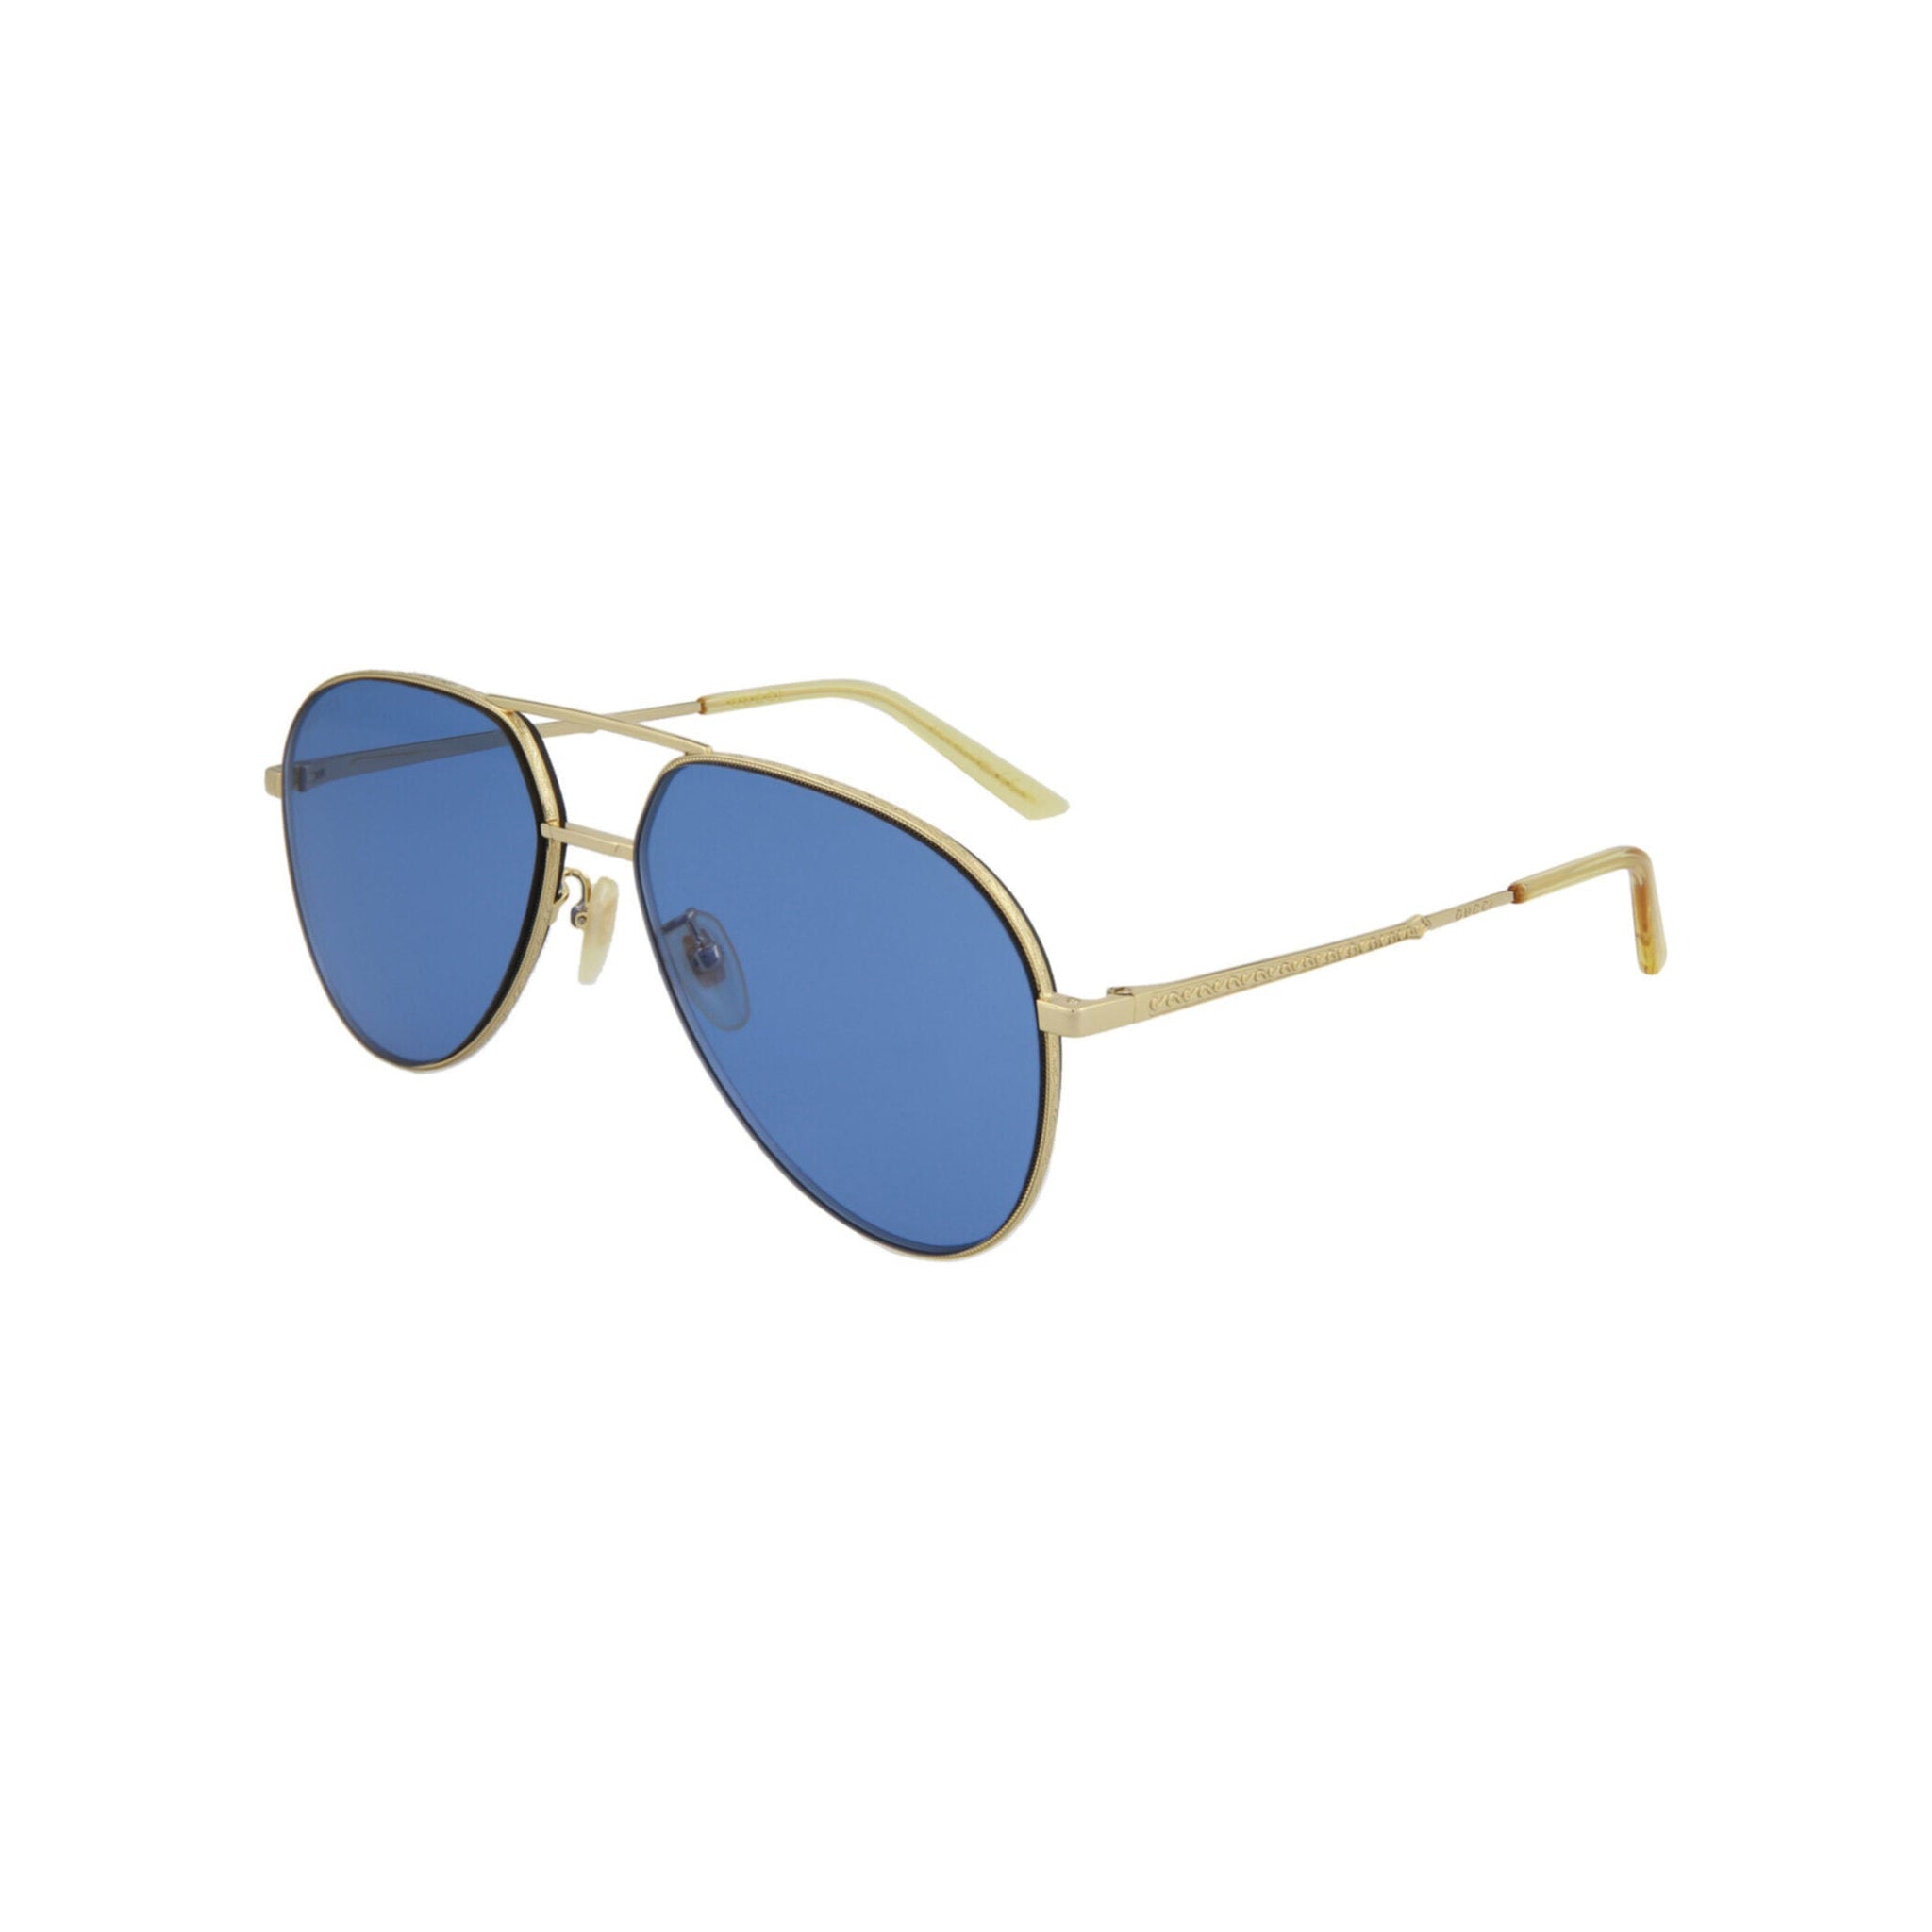 Sunglasses Gucci Blue in Plastic - 41391814